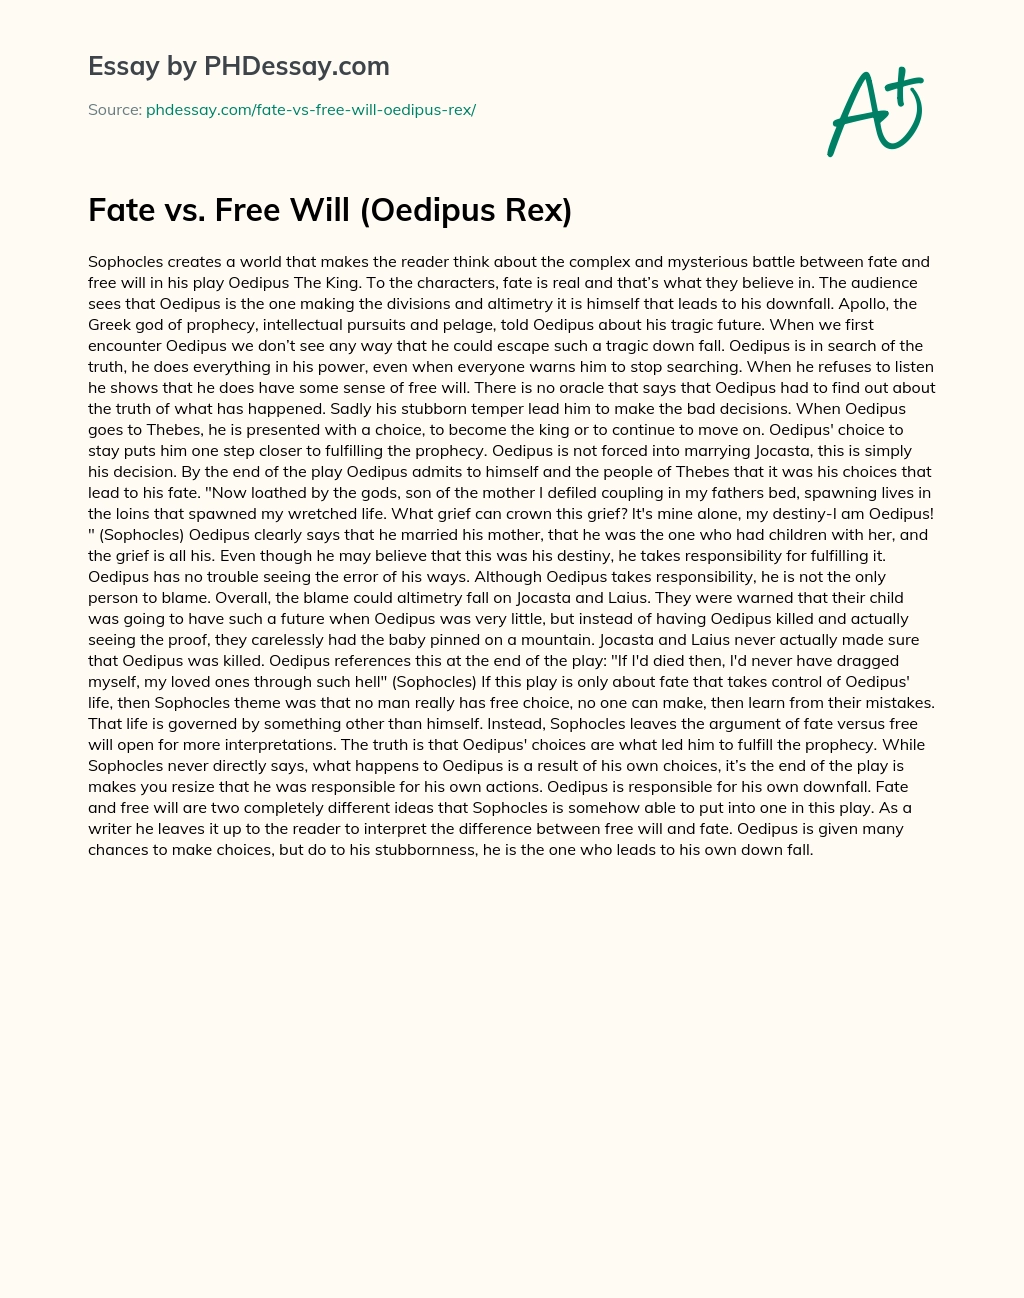 Fate vs. Free Will (Oedipus Rex) essay